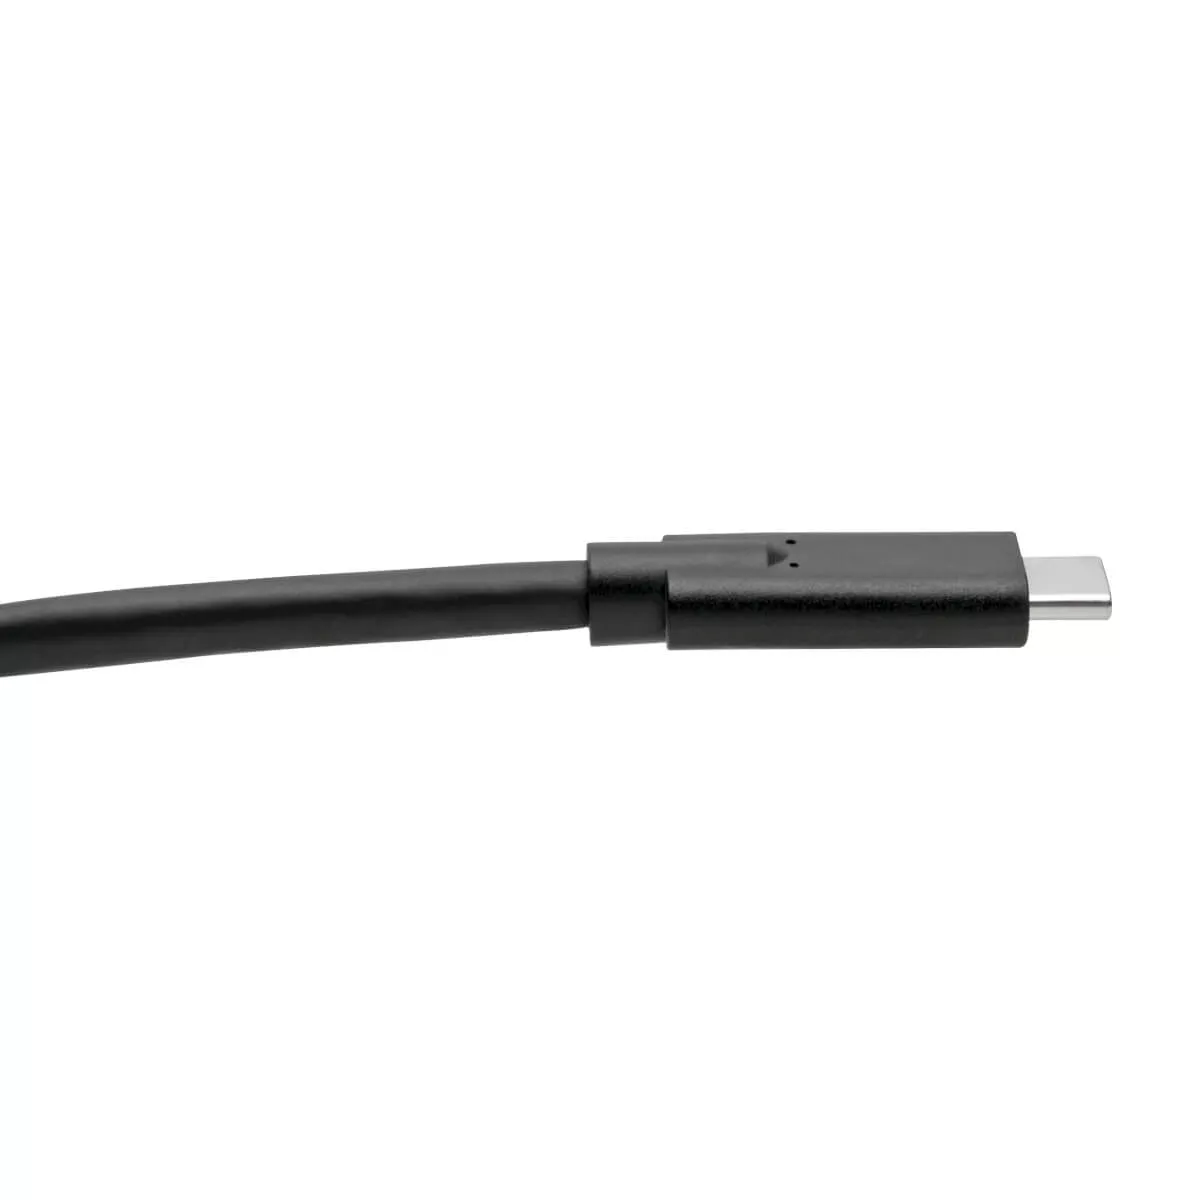 Vente EATON TRIPPLITE USB-C Cable M/M - USB 3.1 Tripp Lite au meilleur prix - visuel 4